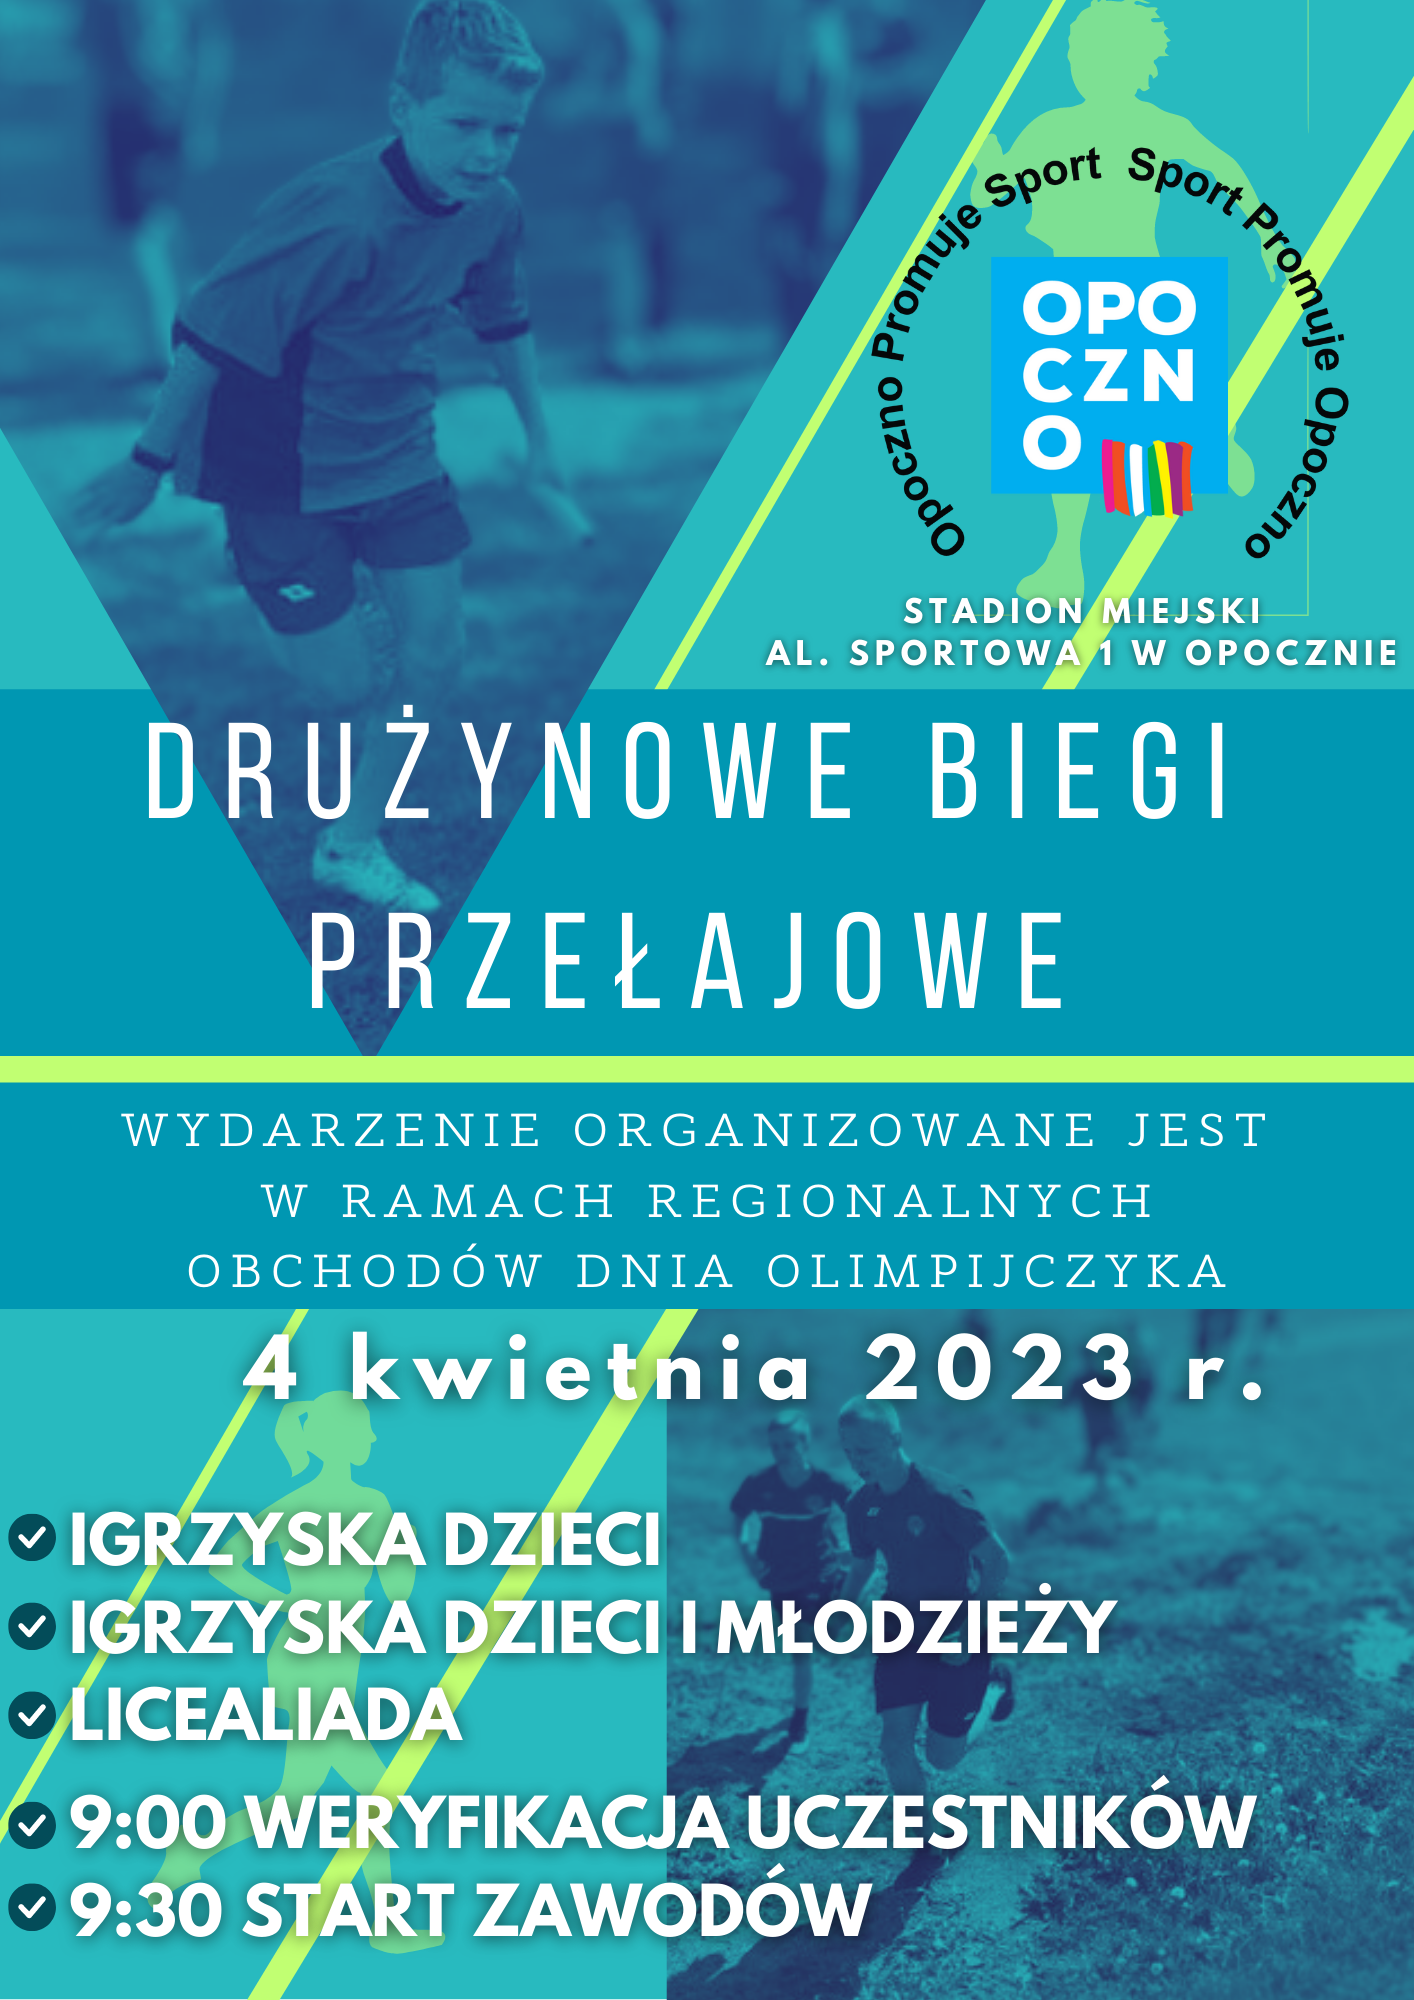 4 kwietnia 2023 r. na stadionie miejskim przy al. Sportowej 1 w Opocznie odbędą się Drużynowe Biegi Przełajowe. Wydarzenie organizowane jest w ramach Regionalnych Obchodów Dnia Olimpijczyka.